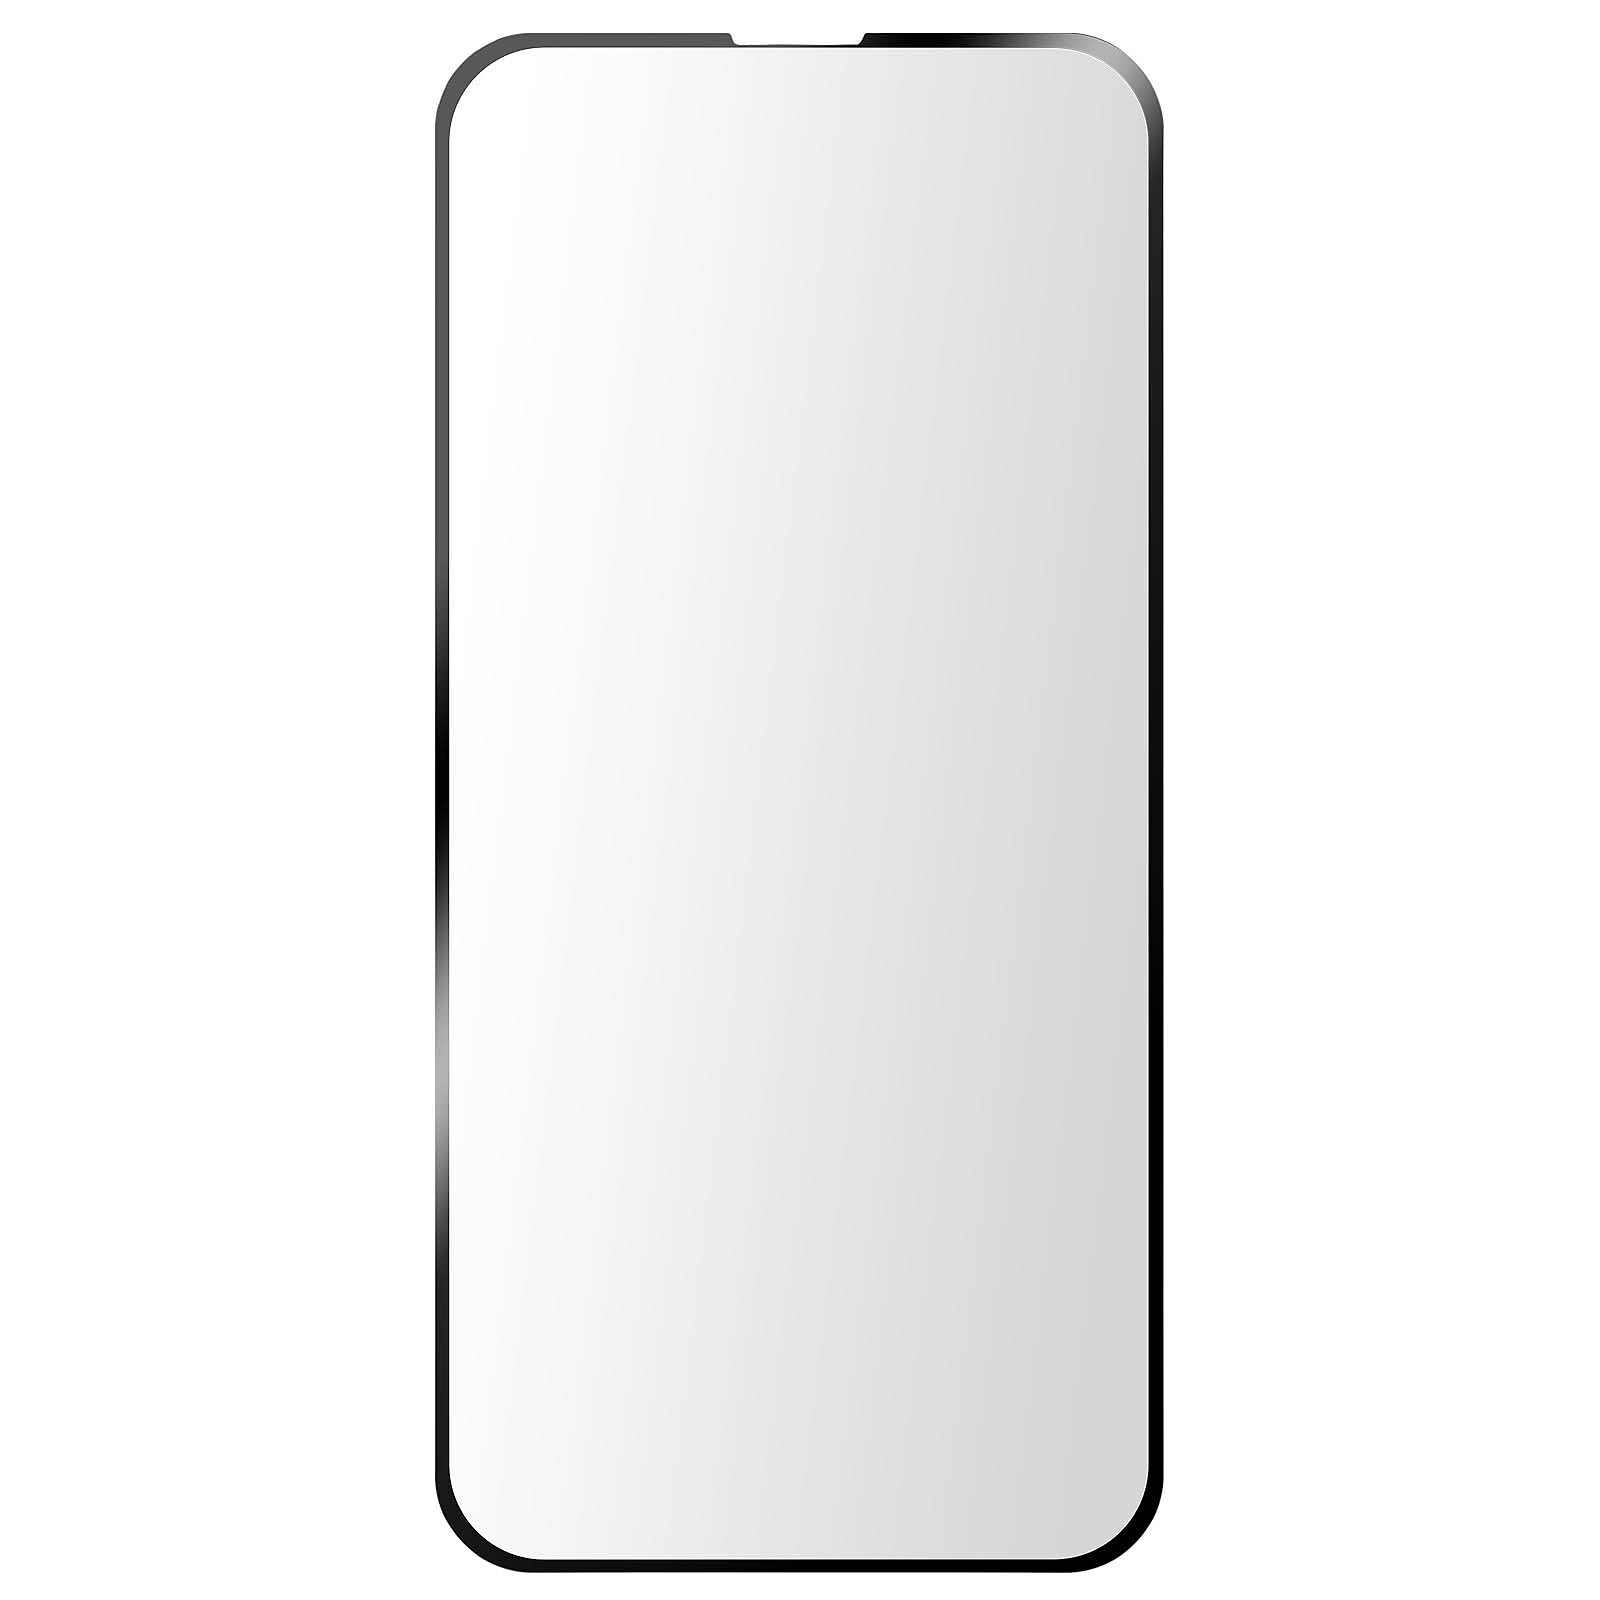 Tiger Glass Plus Verre Trempé 9H+ - Apple iPhone 14 Pro